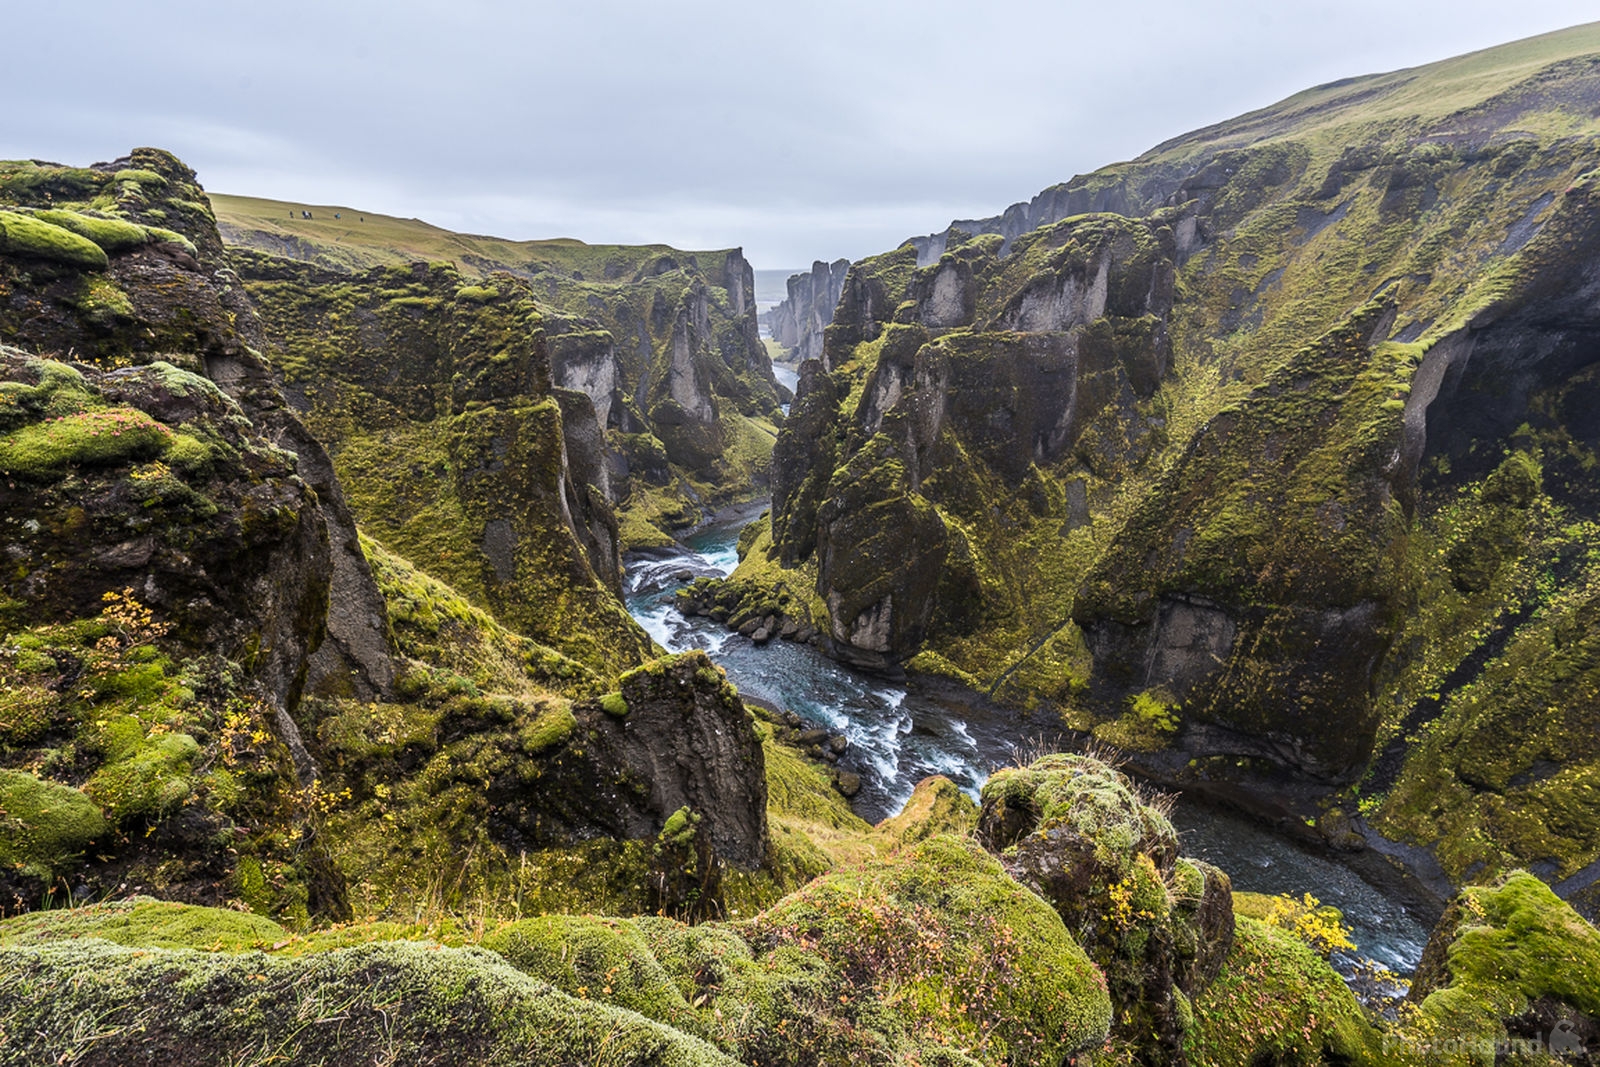 Image of Fjaðrárgljúfur Canyon by James Billings.